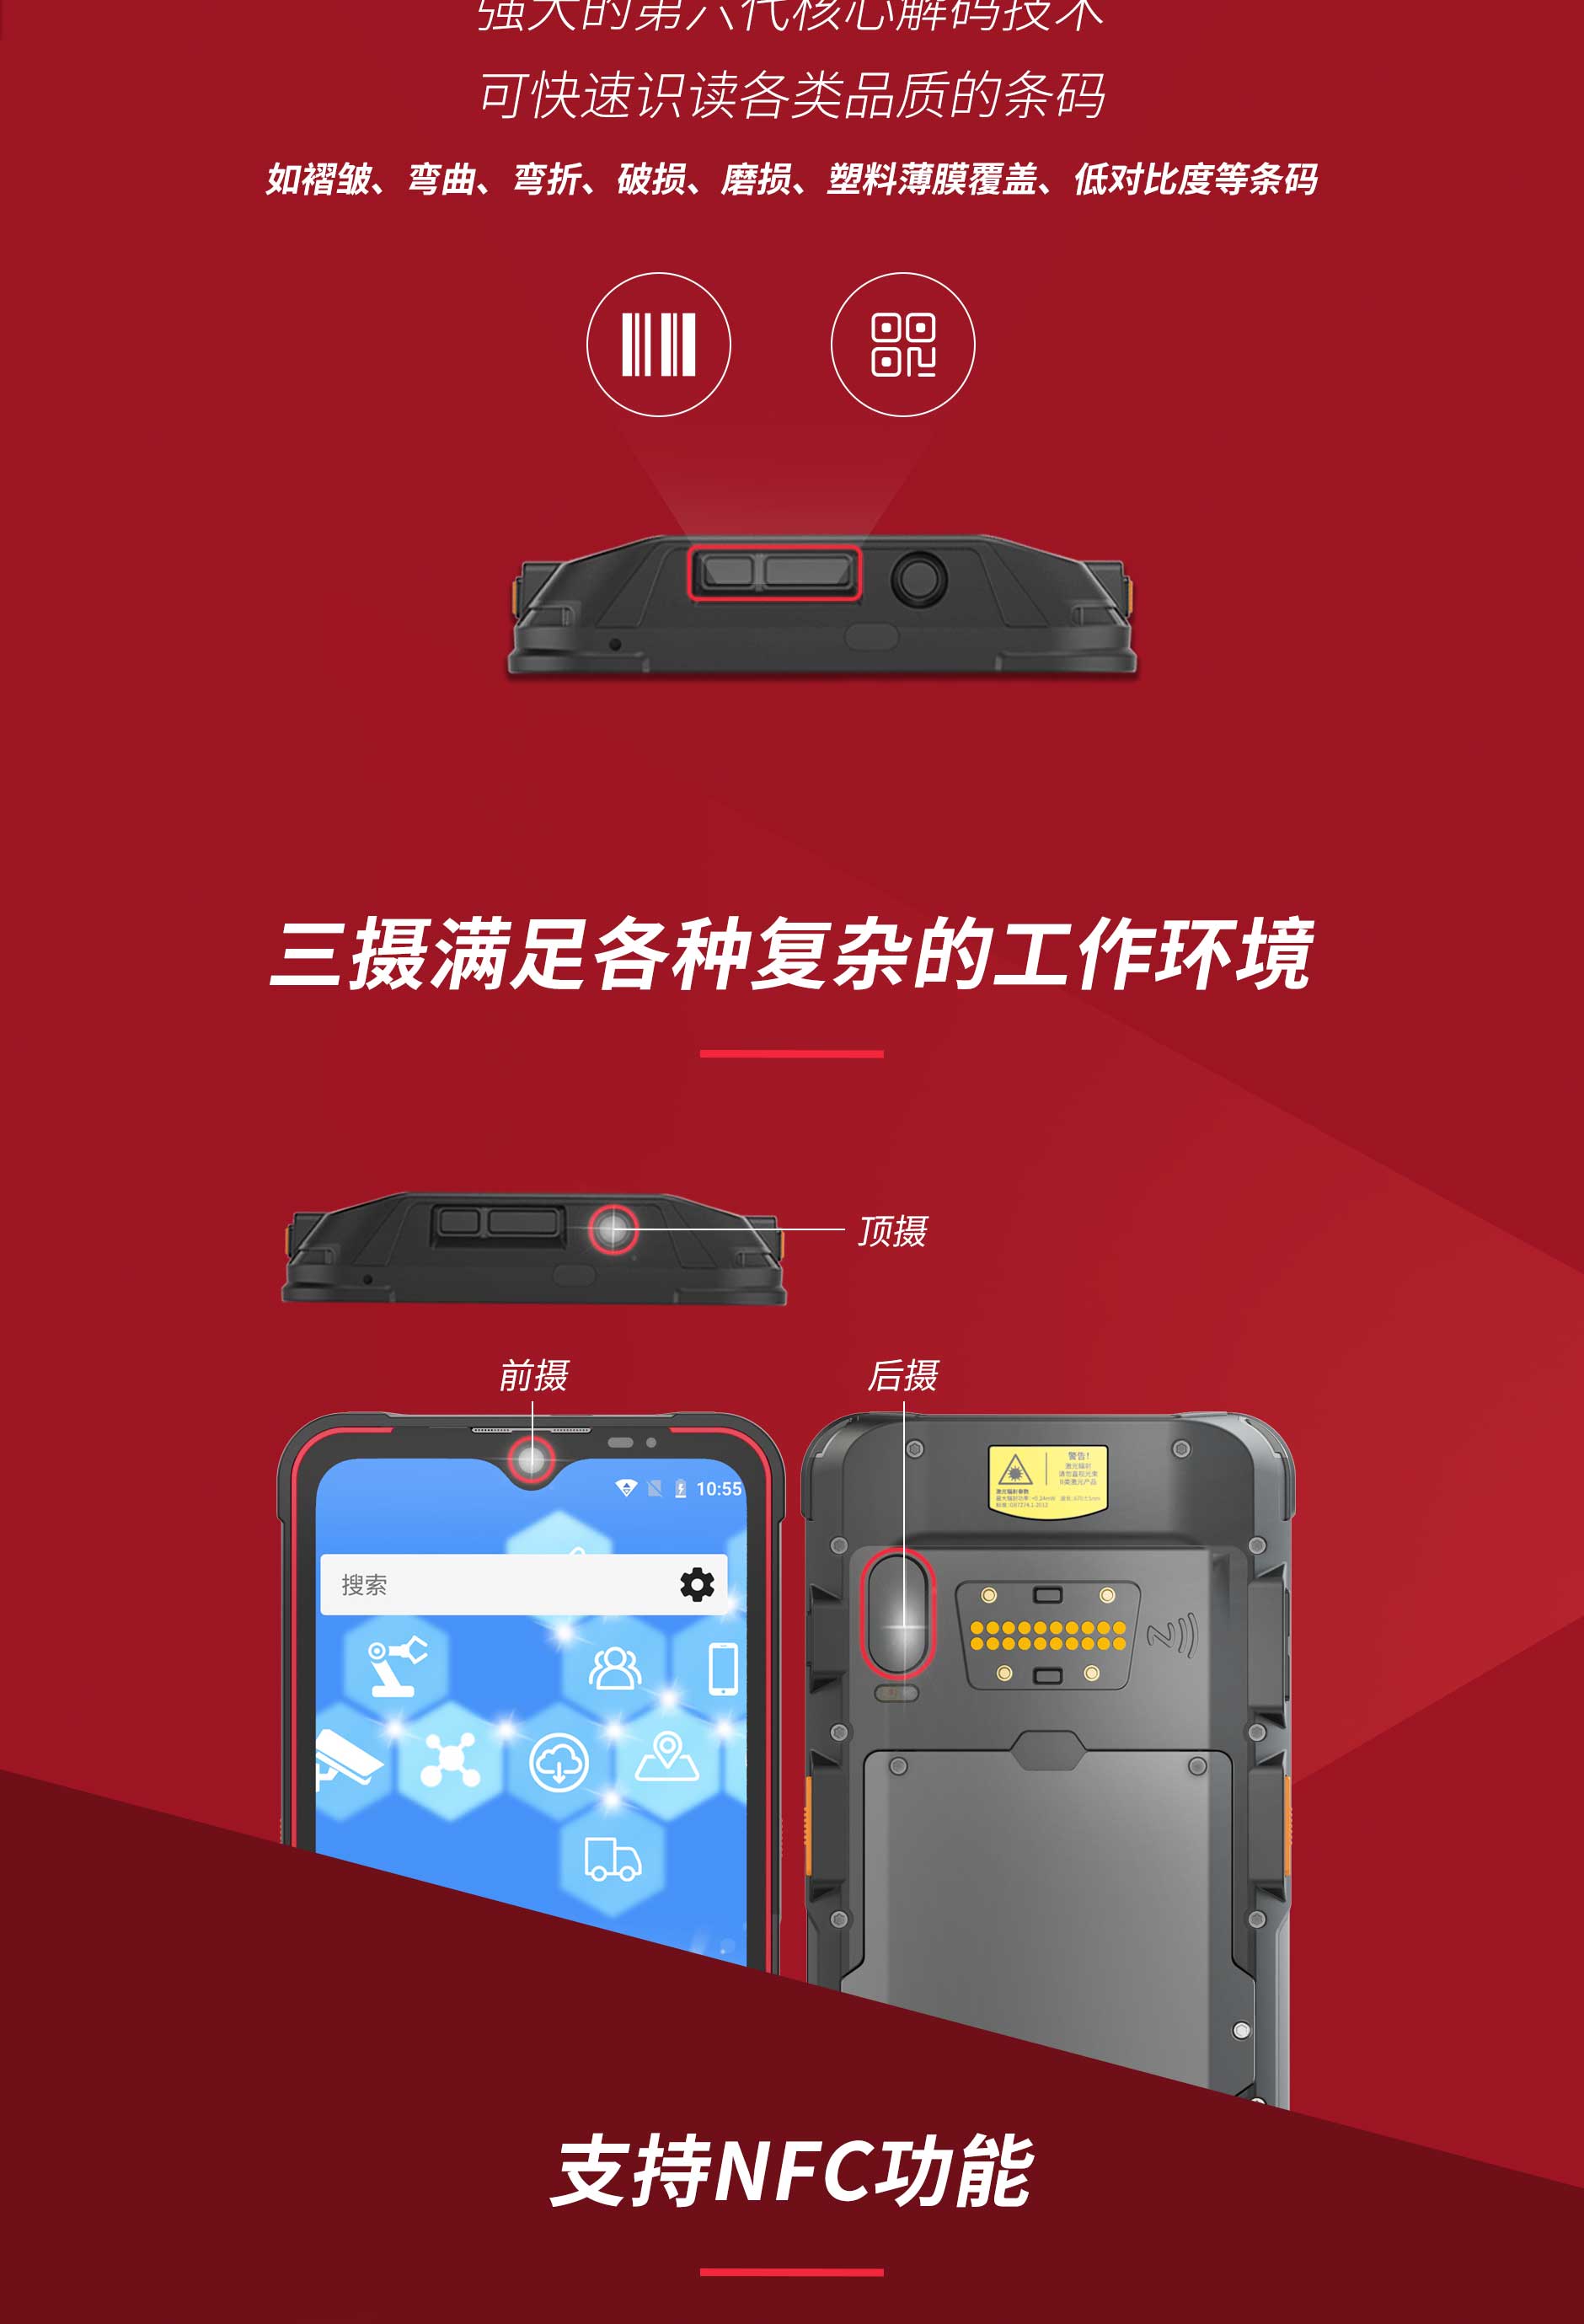 5G 防爆手机：为河北省居民生命财产安全保驾护航的创新产品  第1张